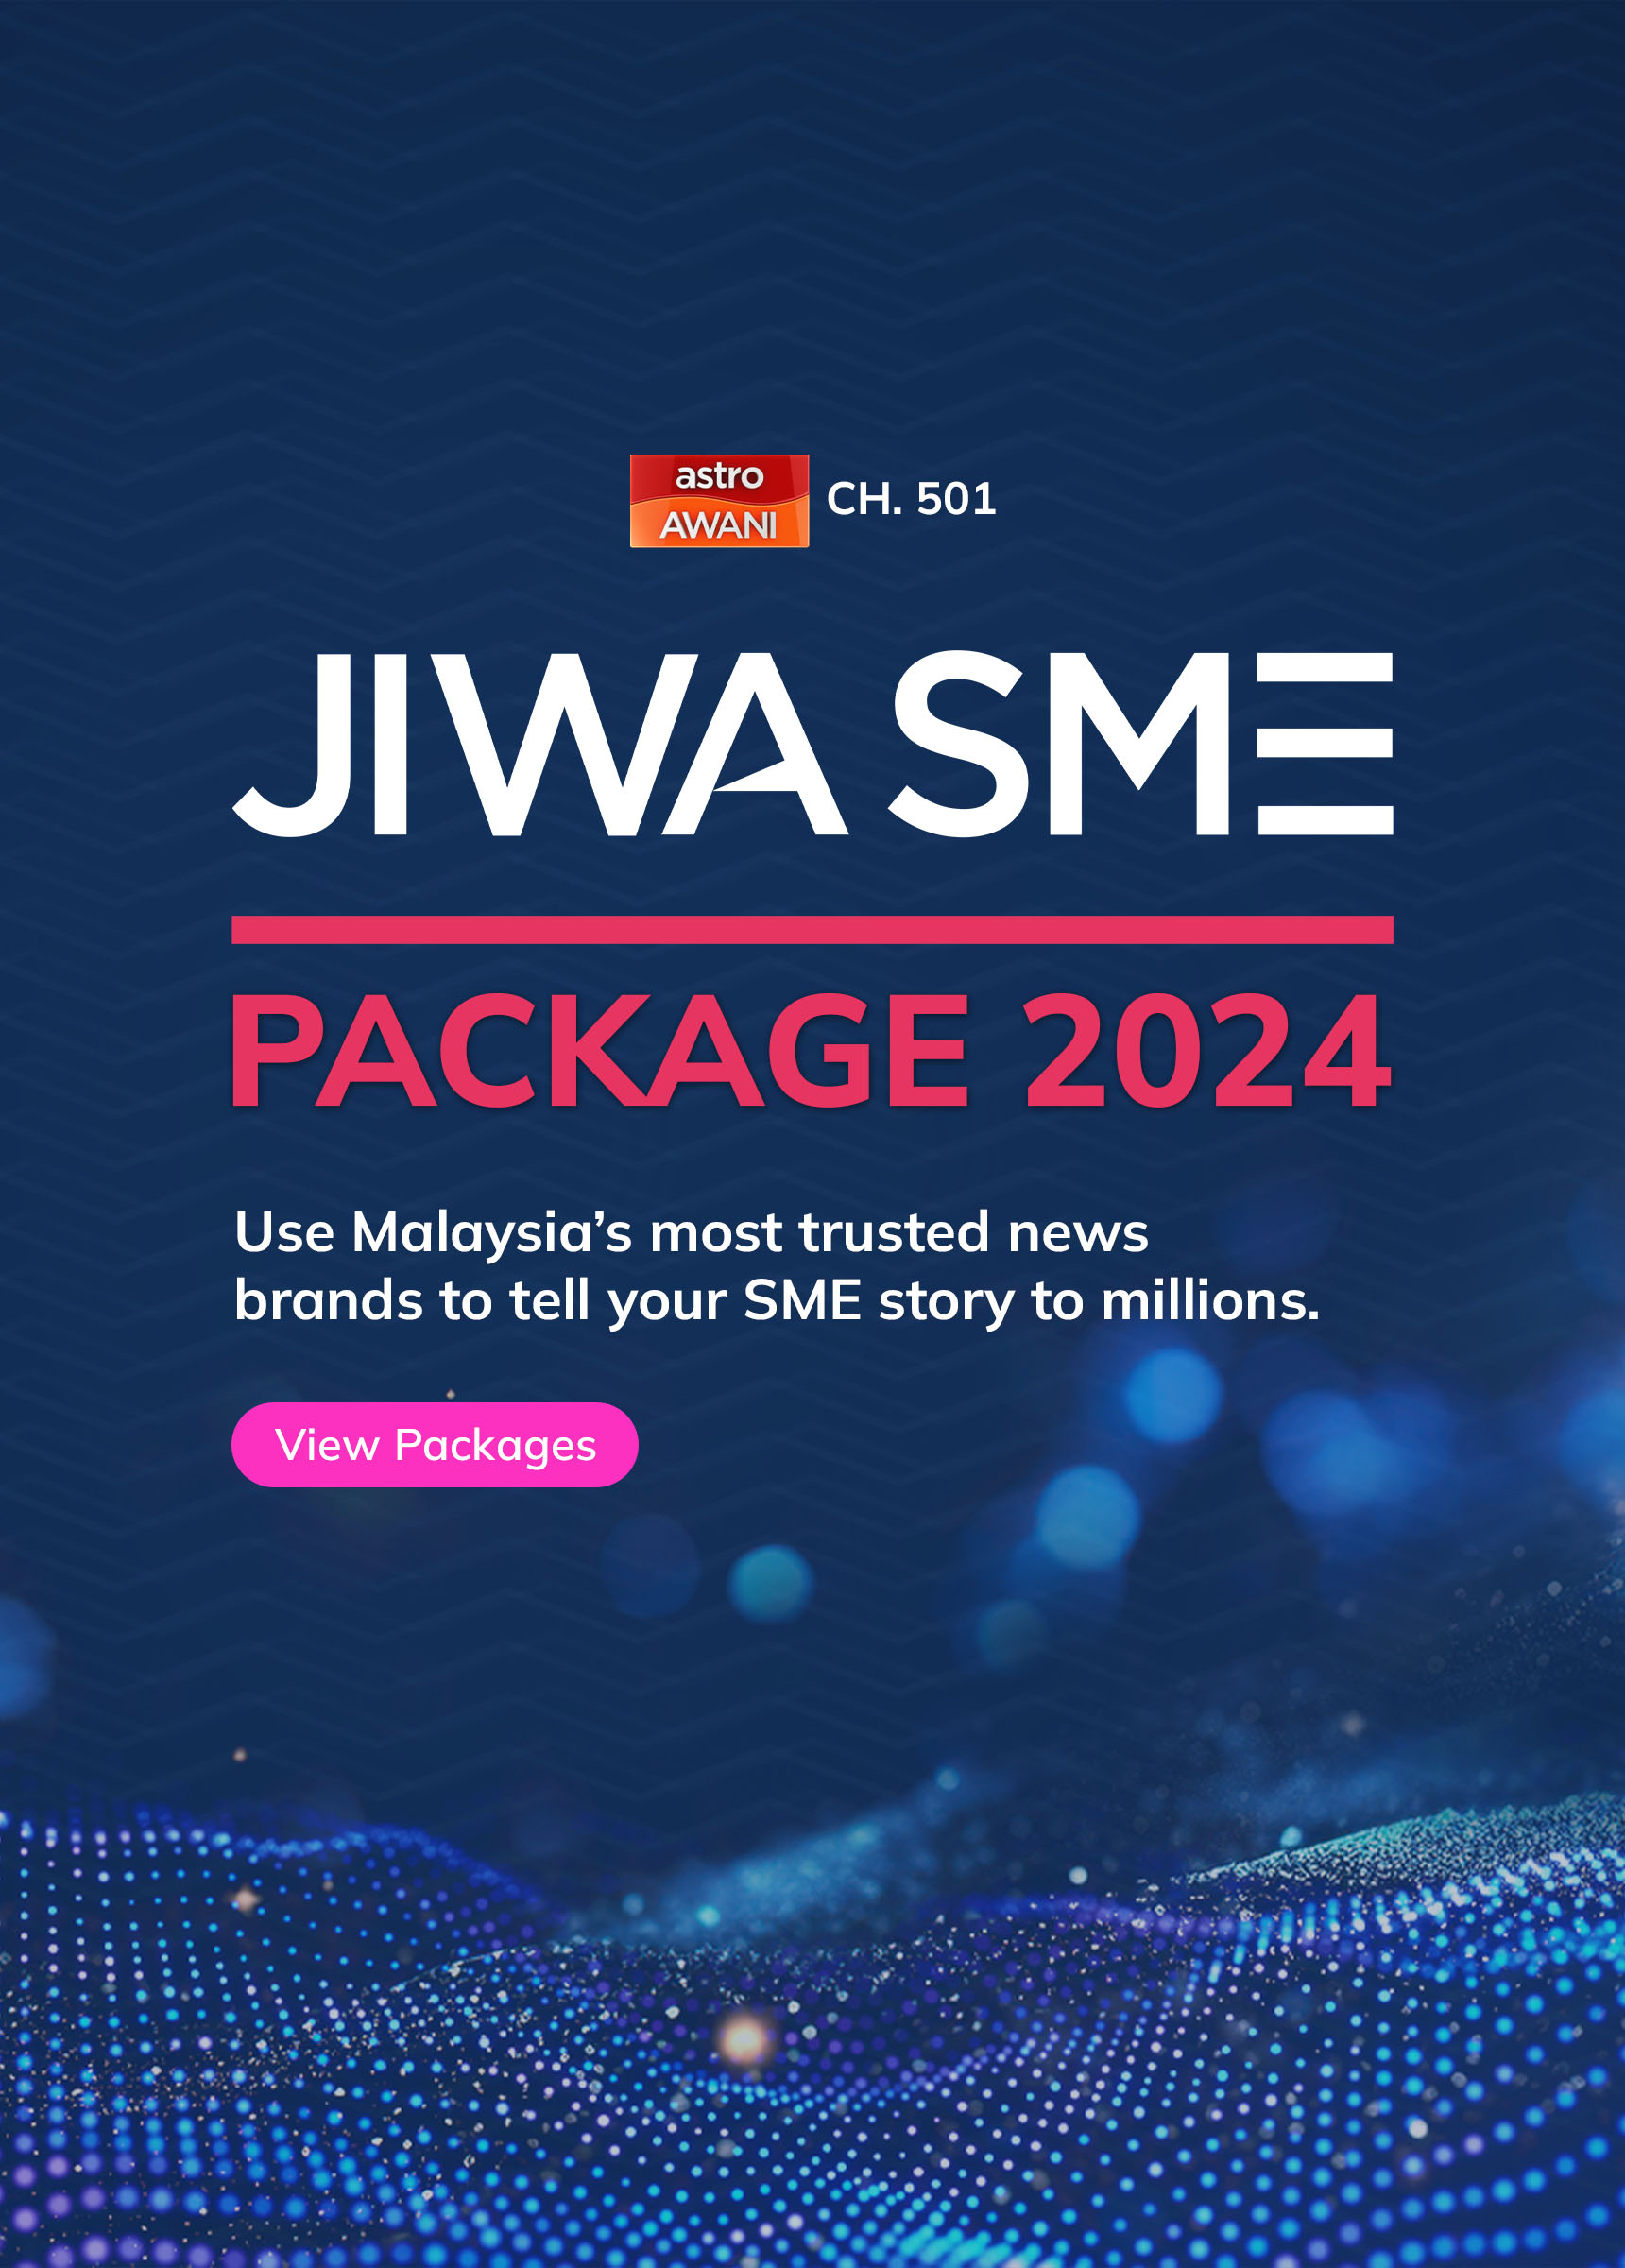 JIWA SME Package 2024